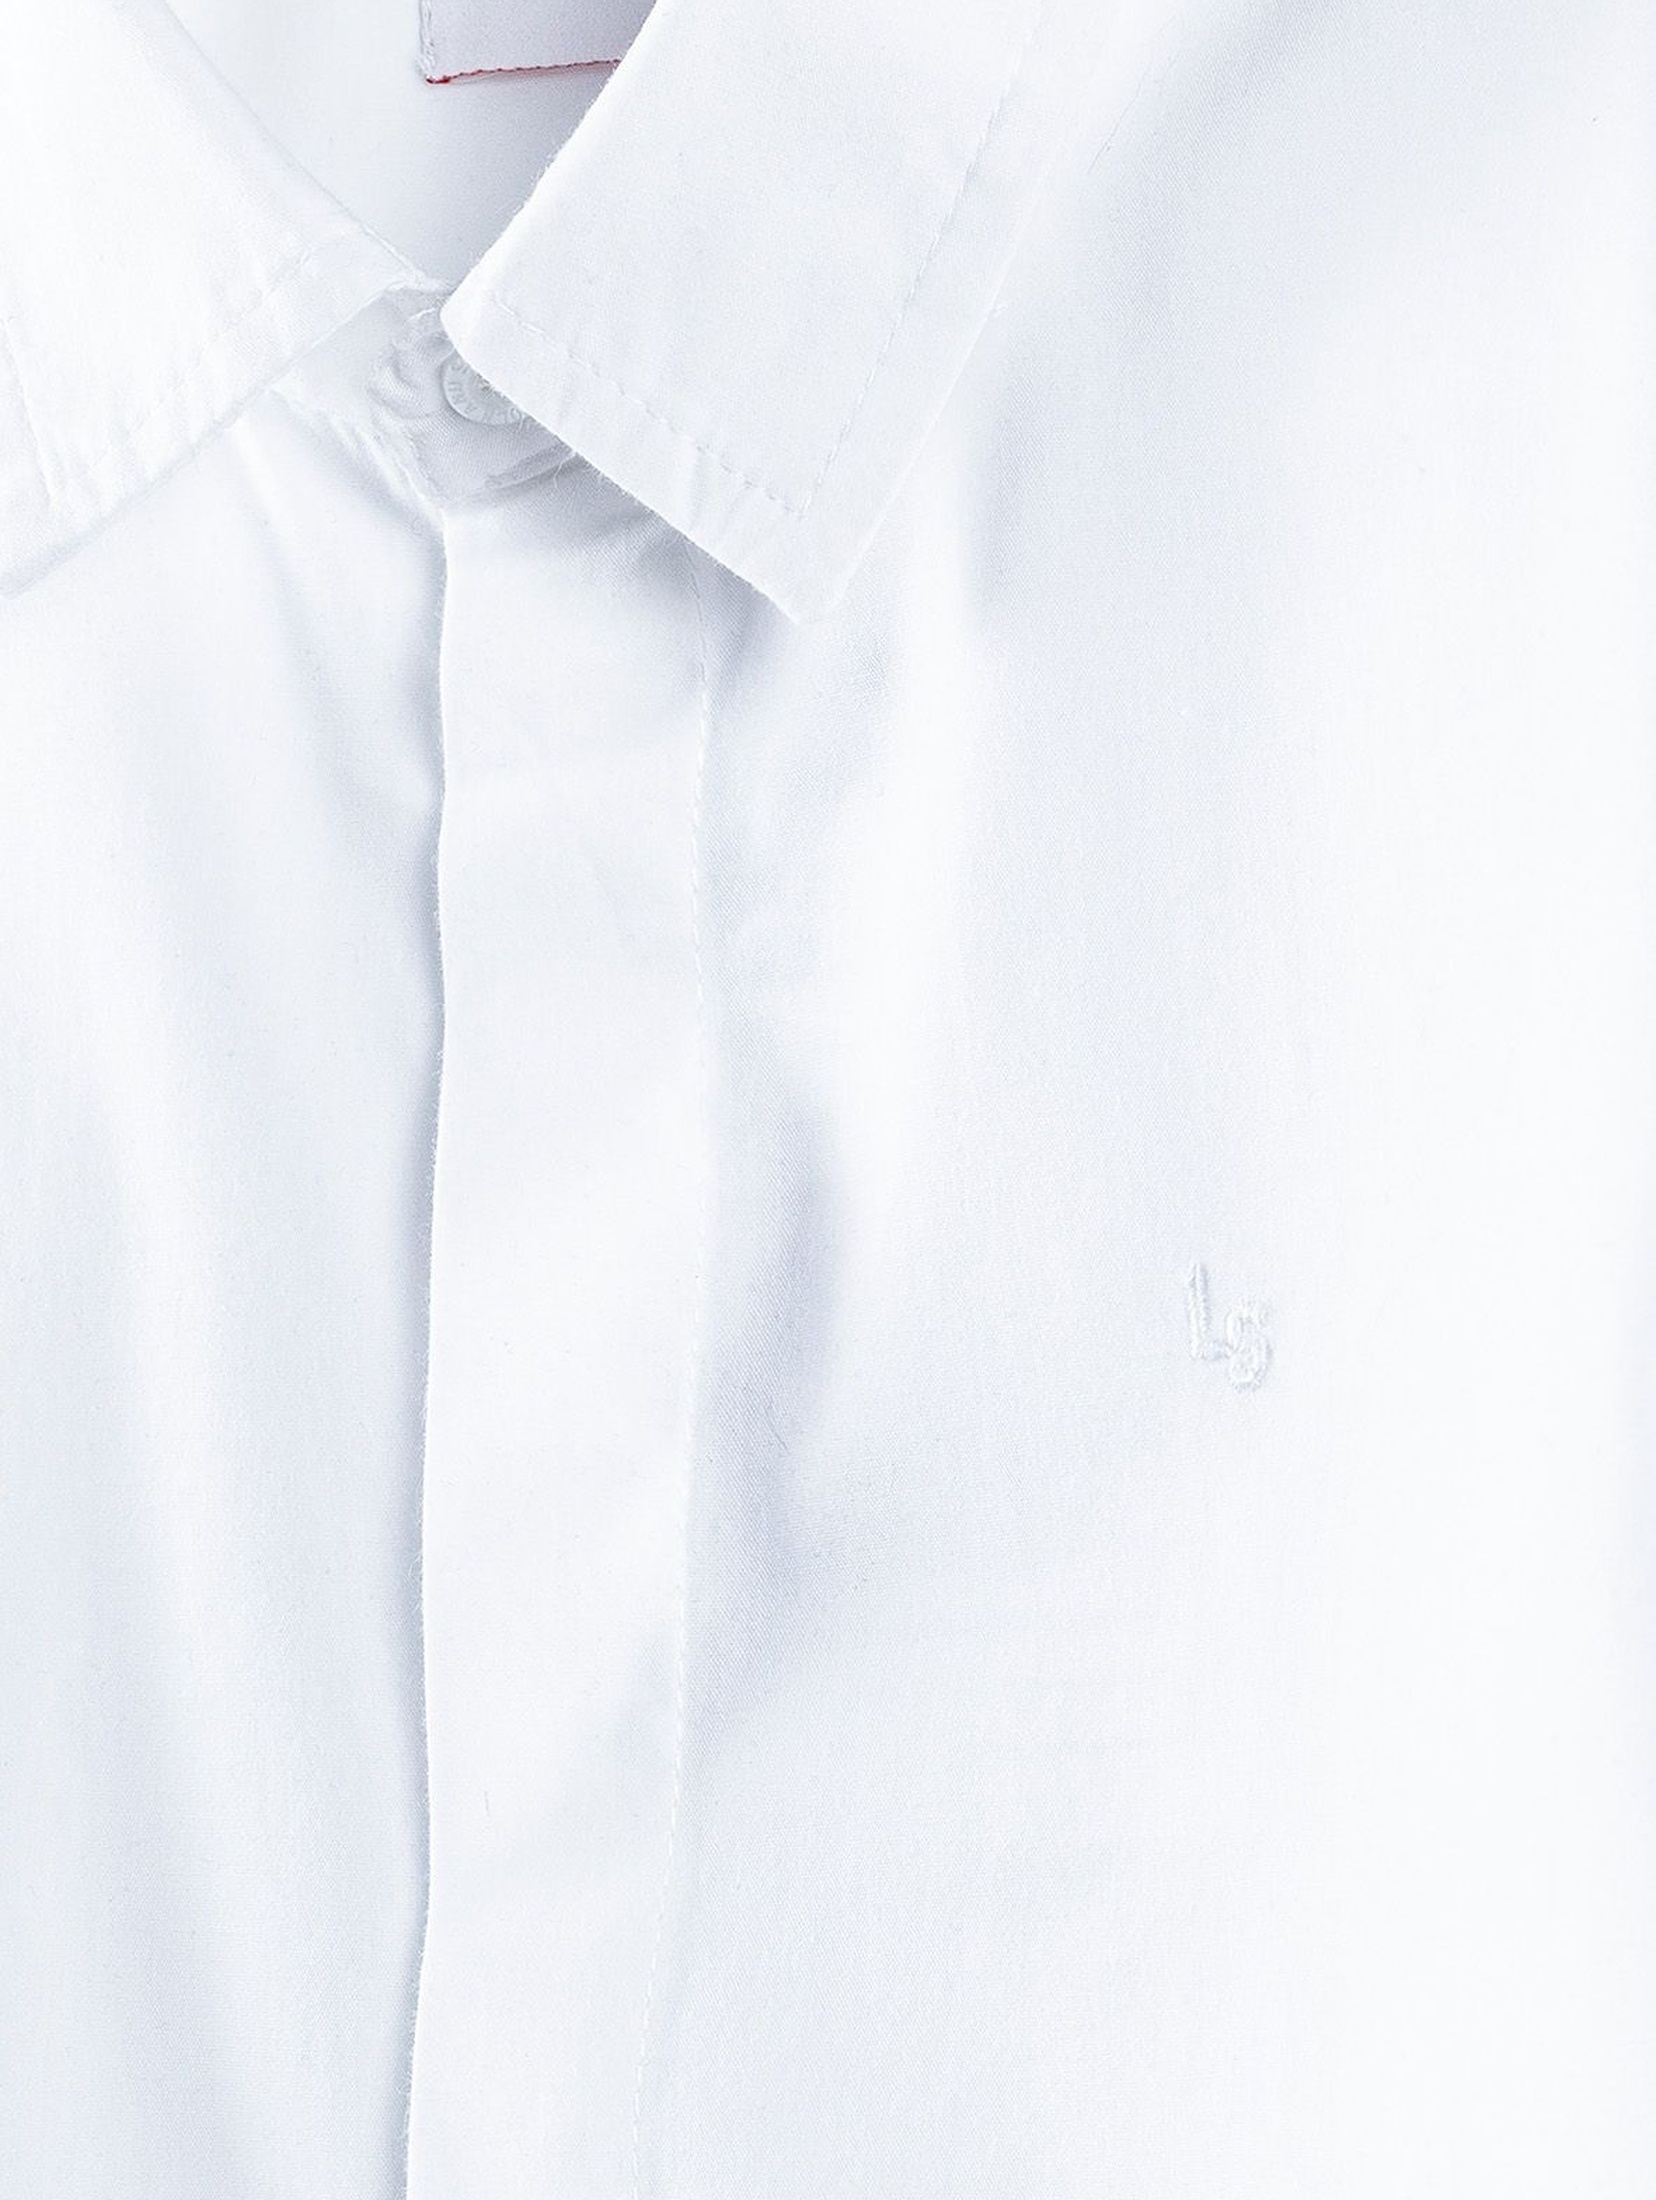 Koszula chłopięca biała z długim rękawem-ubrania na specjalne okazje